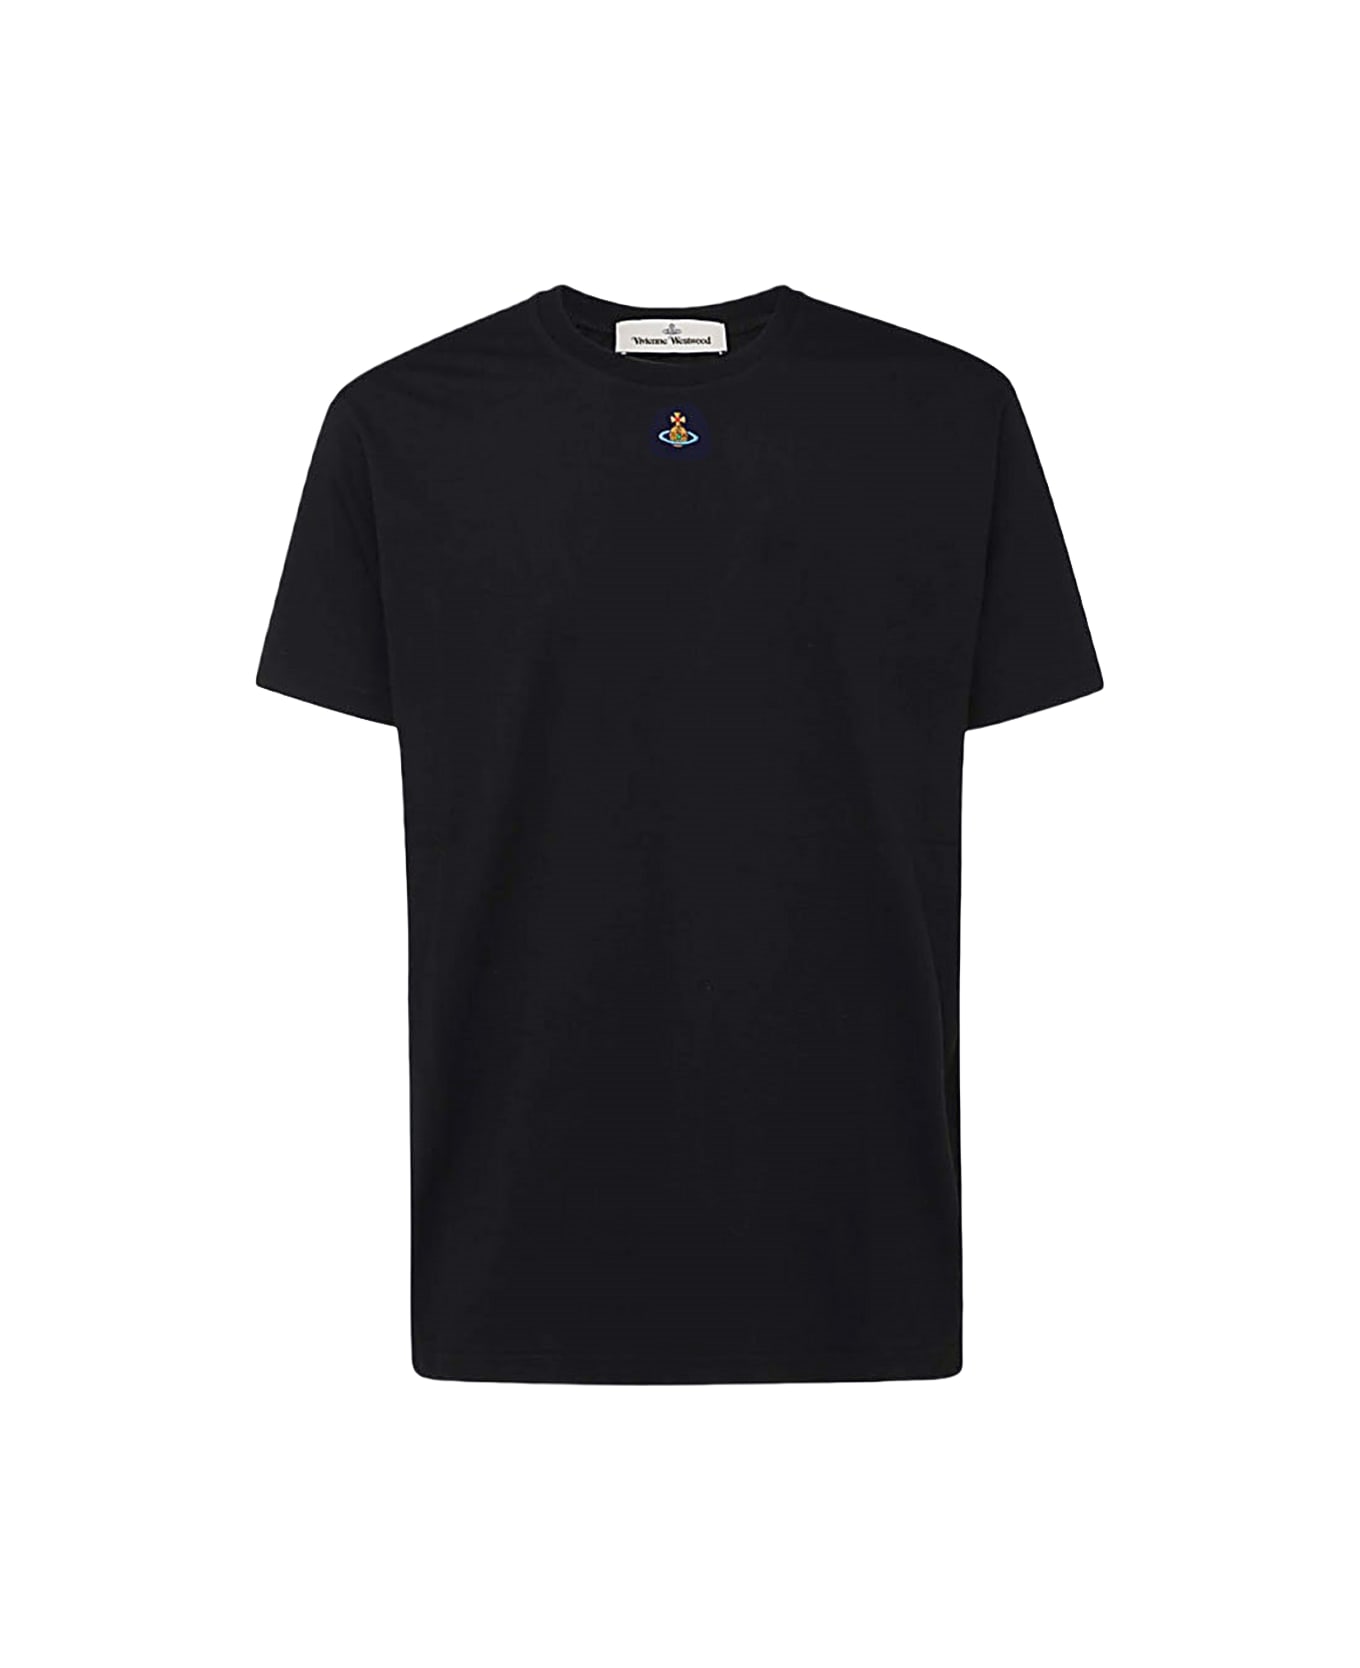 Vivienne Westwood Black Cotton T-shirt - Black